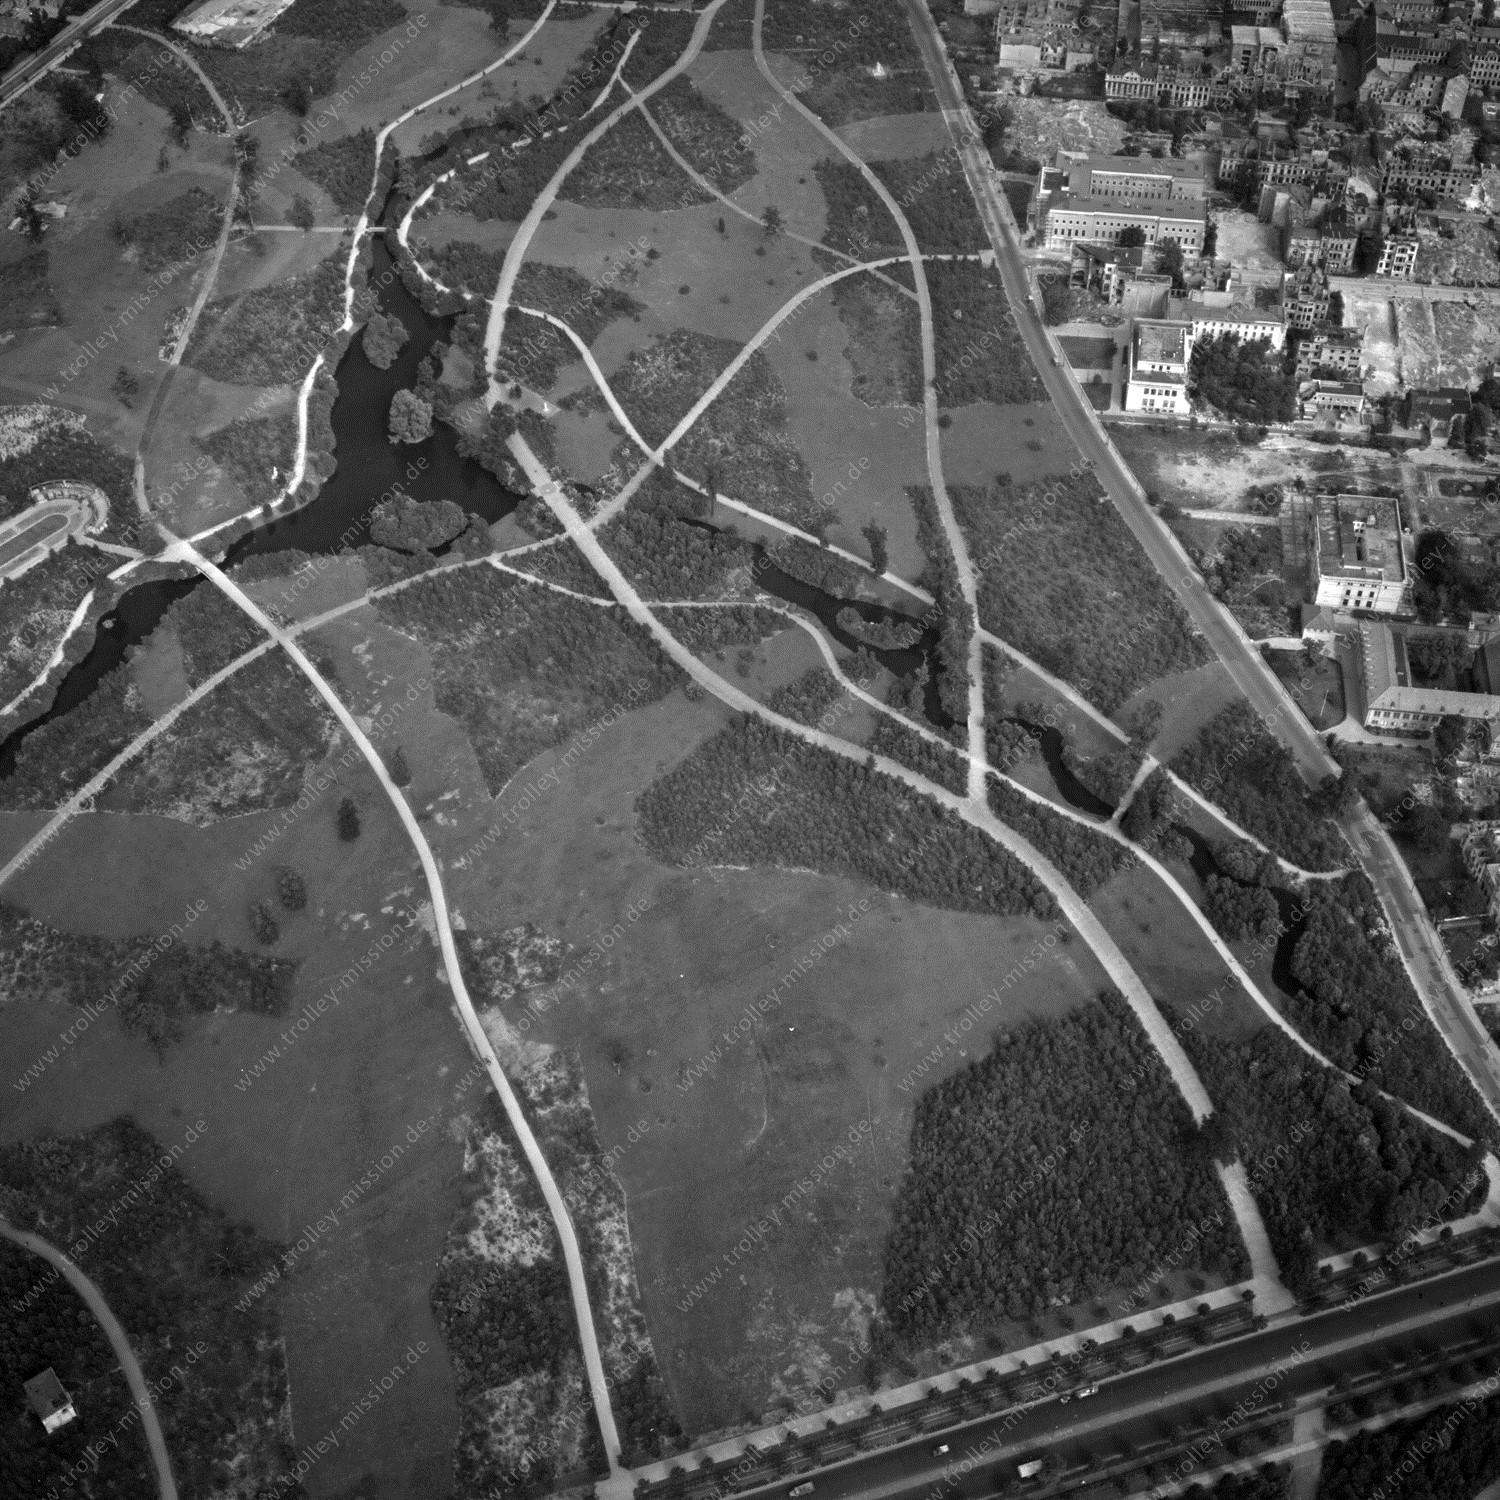 Alte Fotos und Luftbilder von Berlin - Luftbildaufnahme Nr. 05 - Historische Luftaufnahmen von West-Berlin aus dem Jahr 1954 - Flugstrecke Whiskey